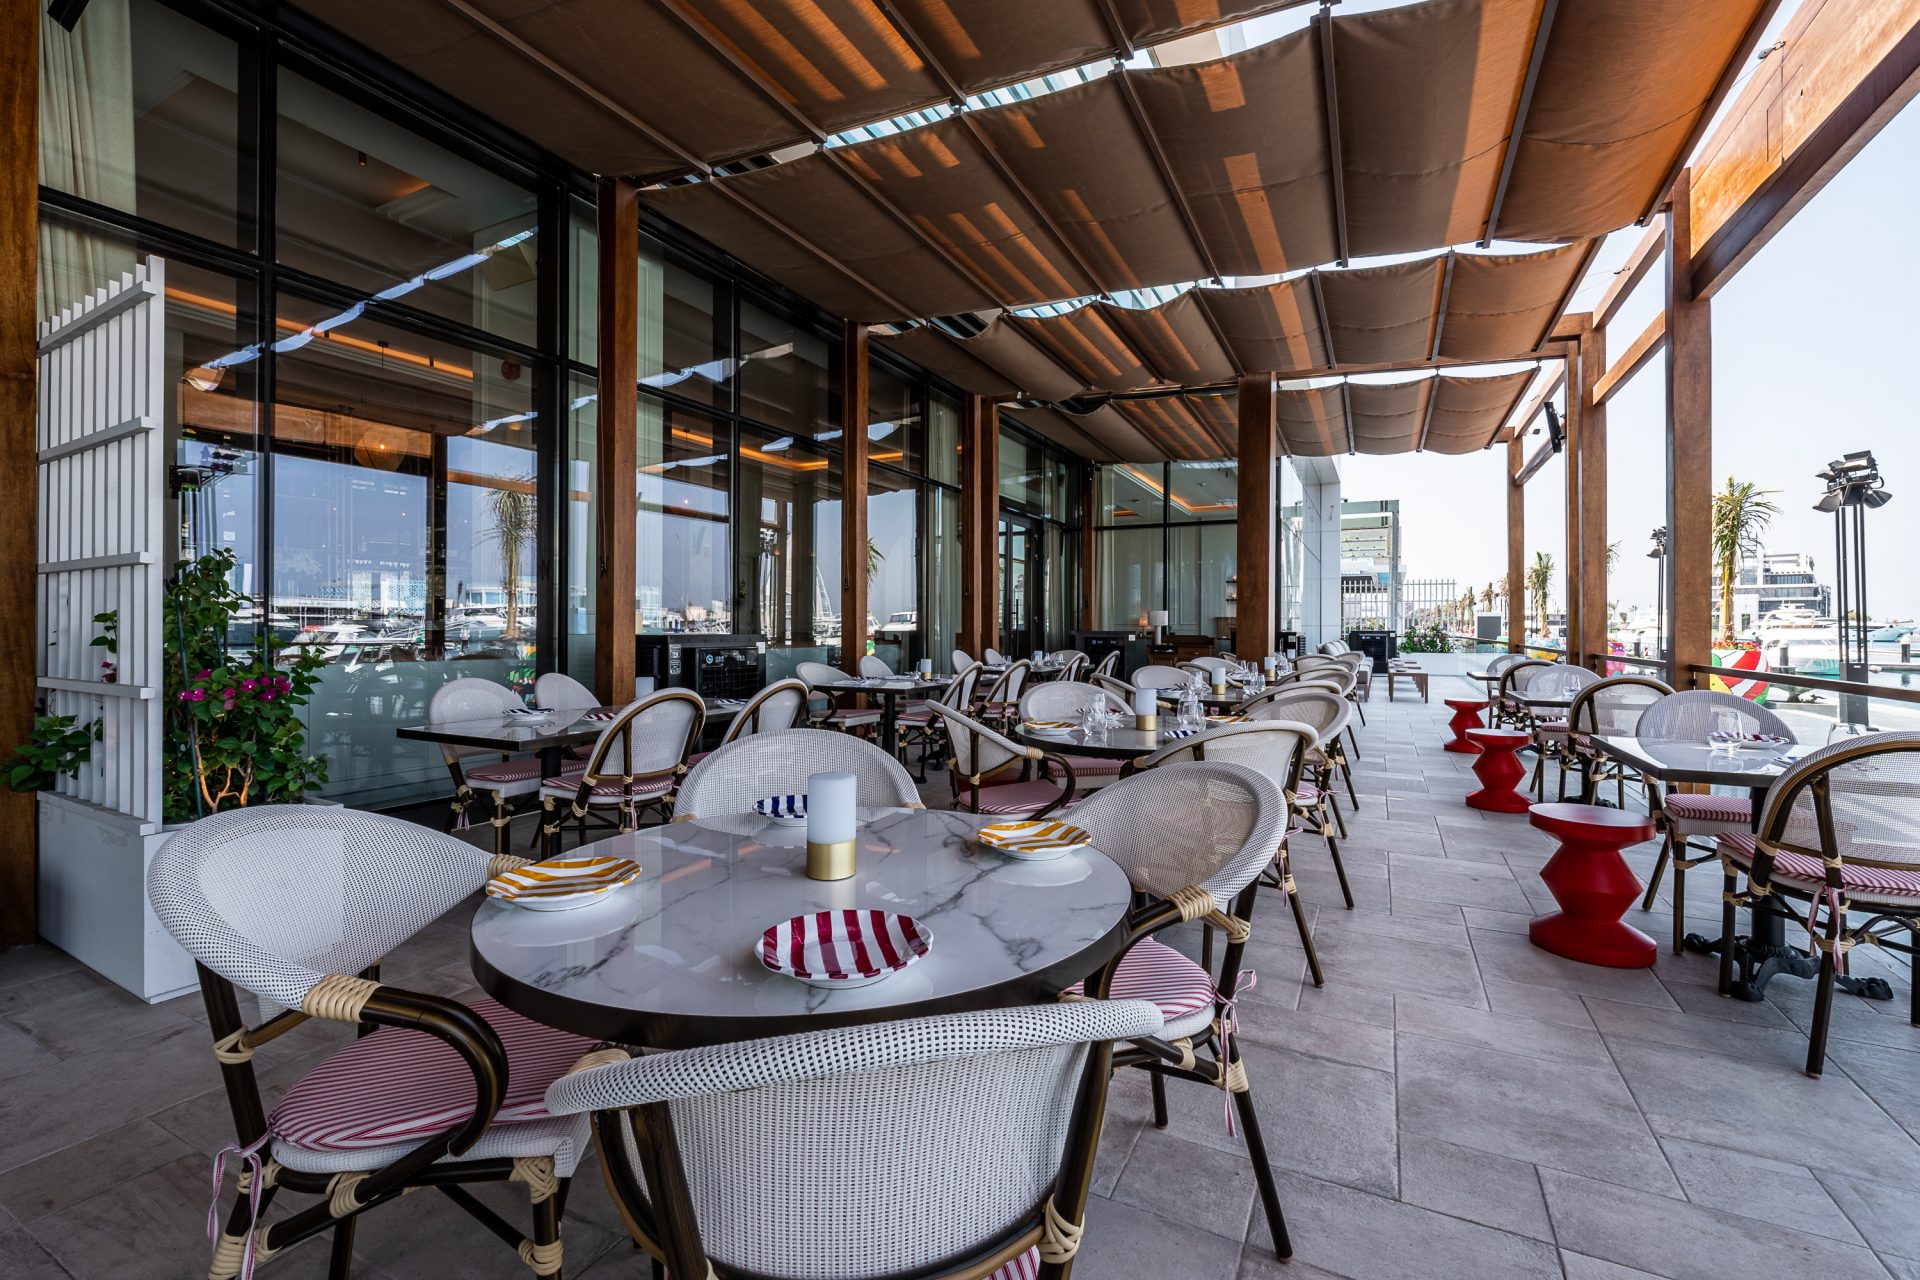 Fancy Dining area on the terrace of Le Comptoir De Nicole - French Cuisine Restaurant at Jeddah Yacht Club